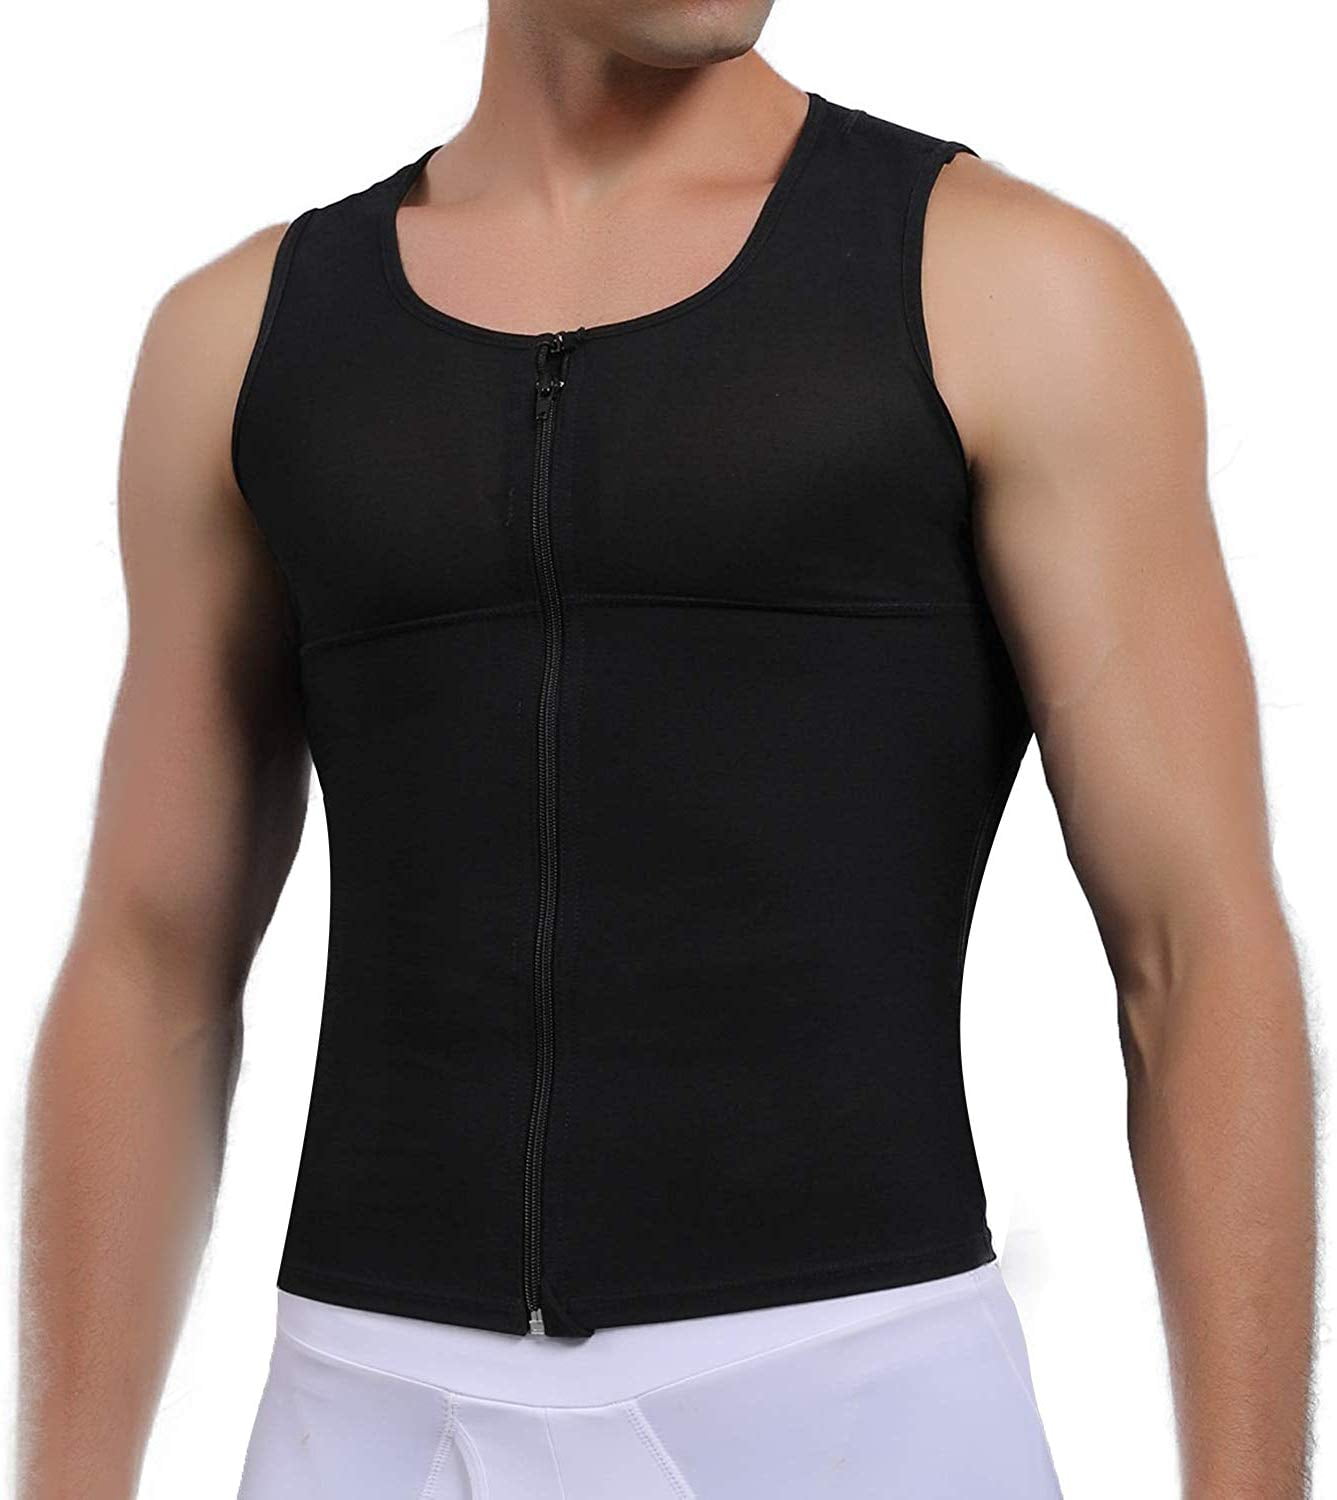 VASLANDA Men's Zipper Firm Control Body Shaper Vest Heavy Compression ...